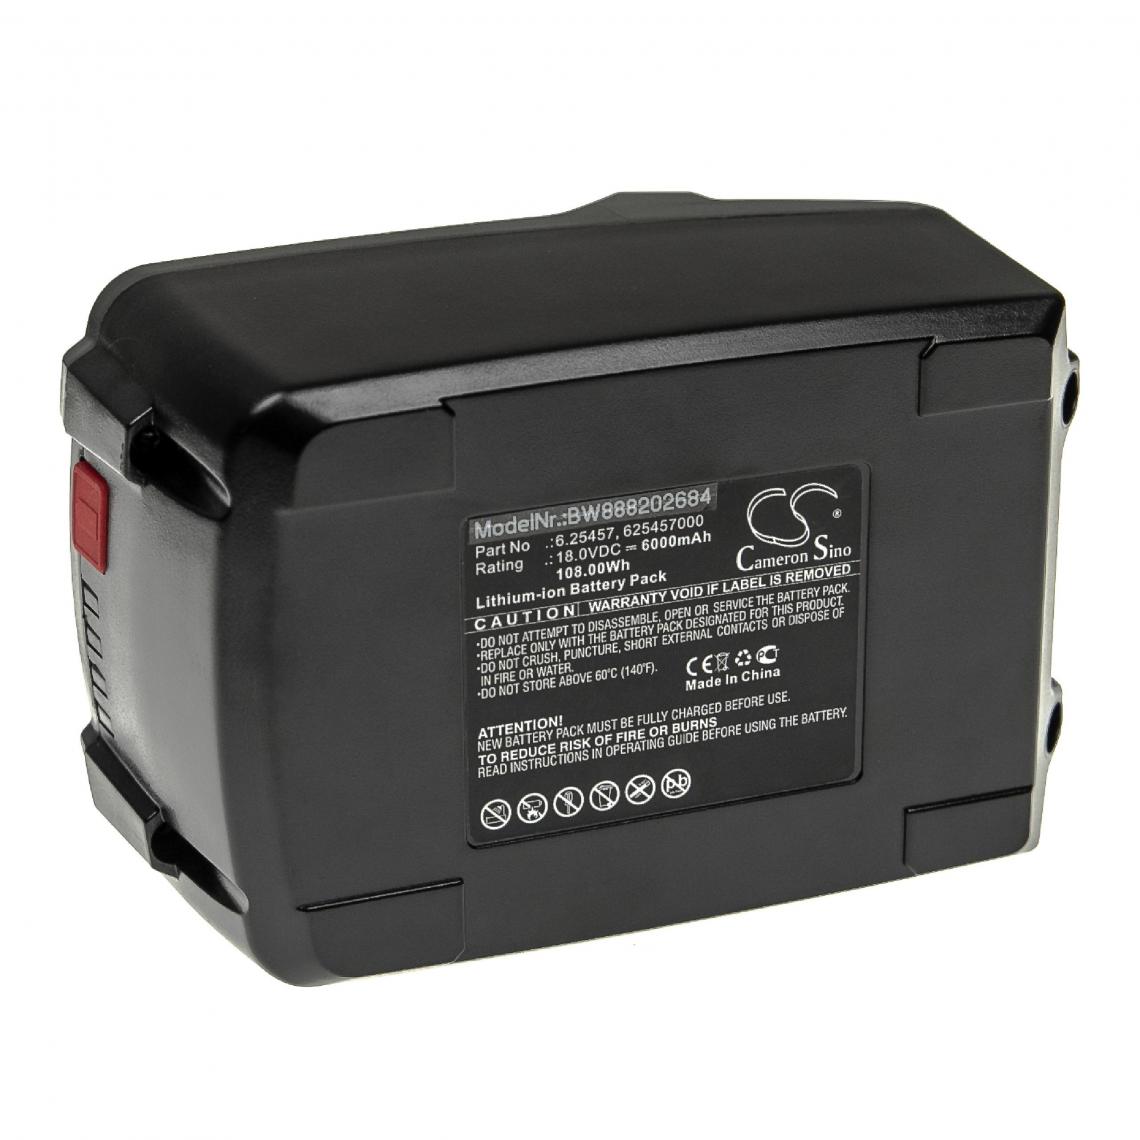 Vhbw - vhbw Batterie remplacement pour Metabo 6.25469.00, 6.25499, 6.25499.00, 6.25527, 625341000 pour outil électrique (6000mAh Li-ion 18 V) - Autre appareil de mesure